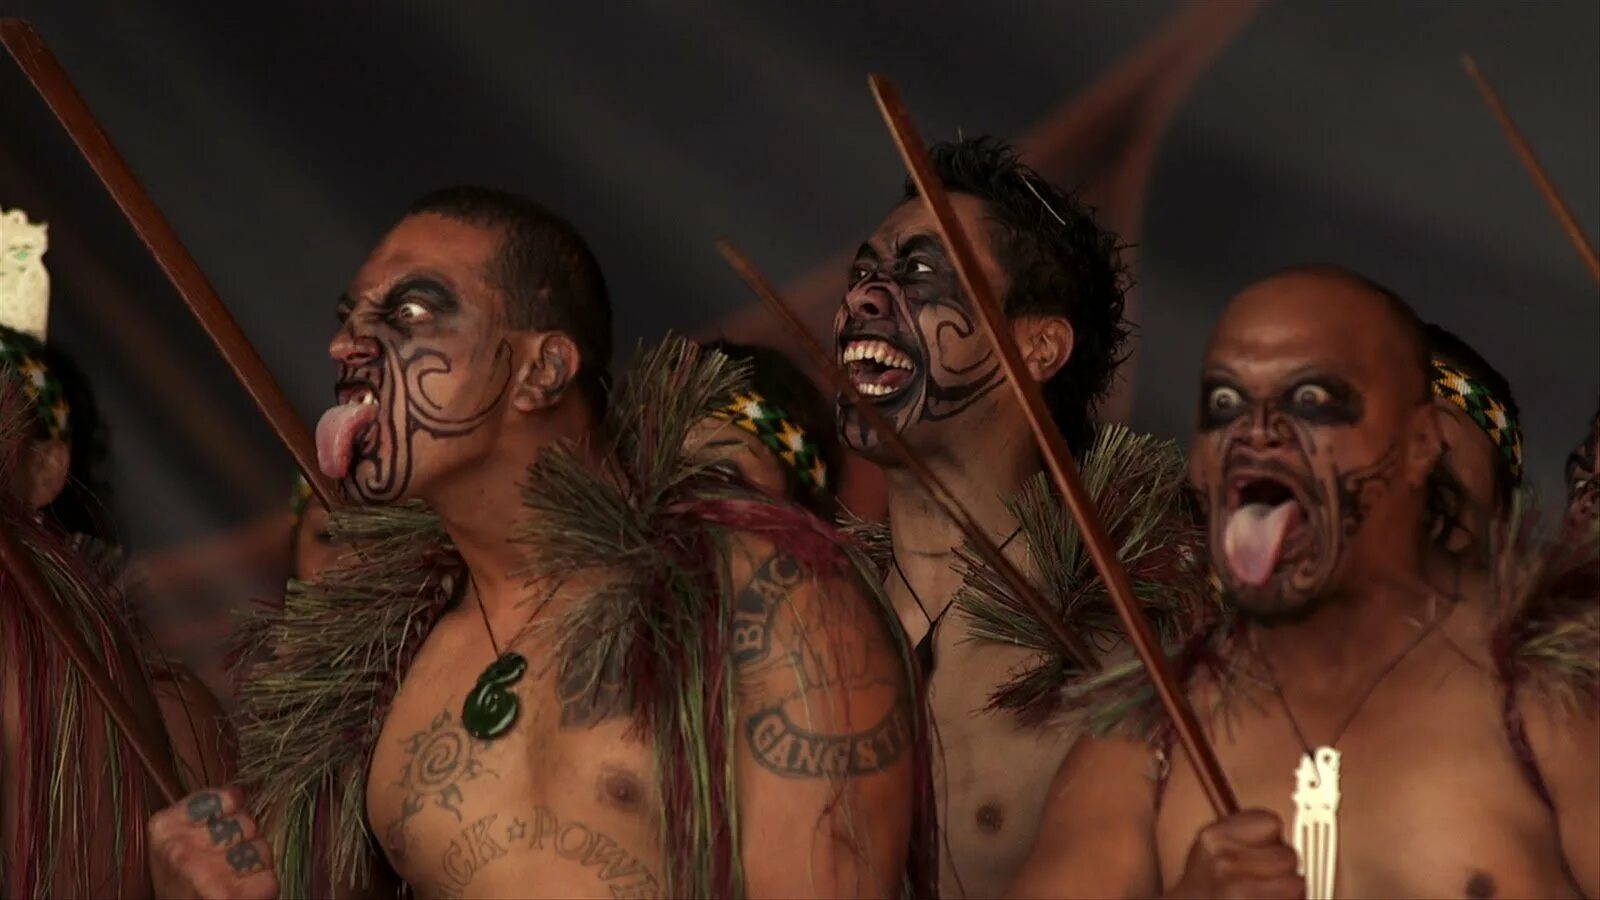 Войны новой зеландии. Маори танец хака. Маури племя в новой Зеландии. Боевой танец Маори хака. Индейцы Маори новая Зеландия.